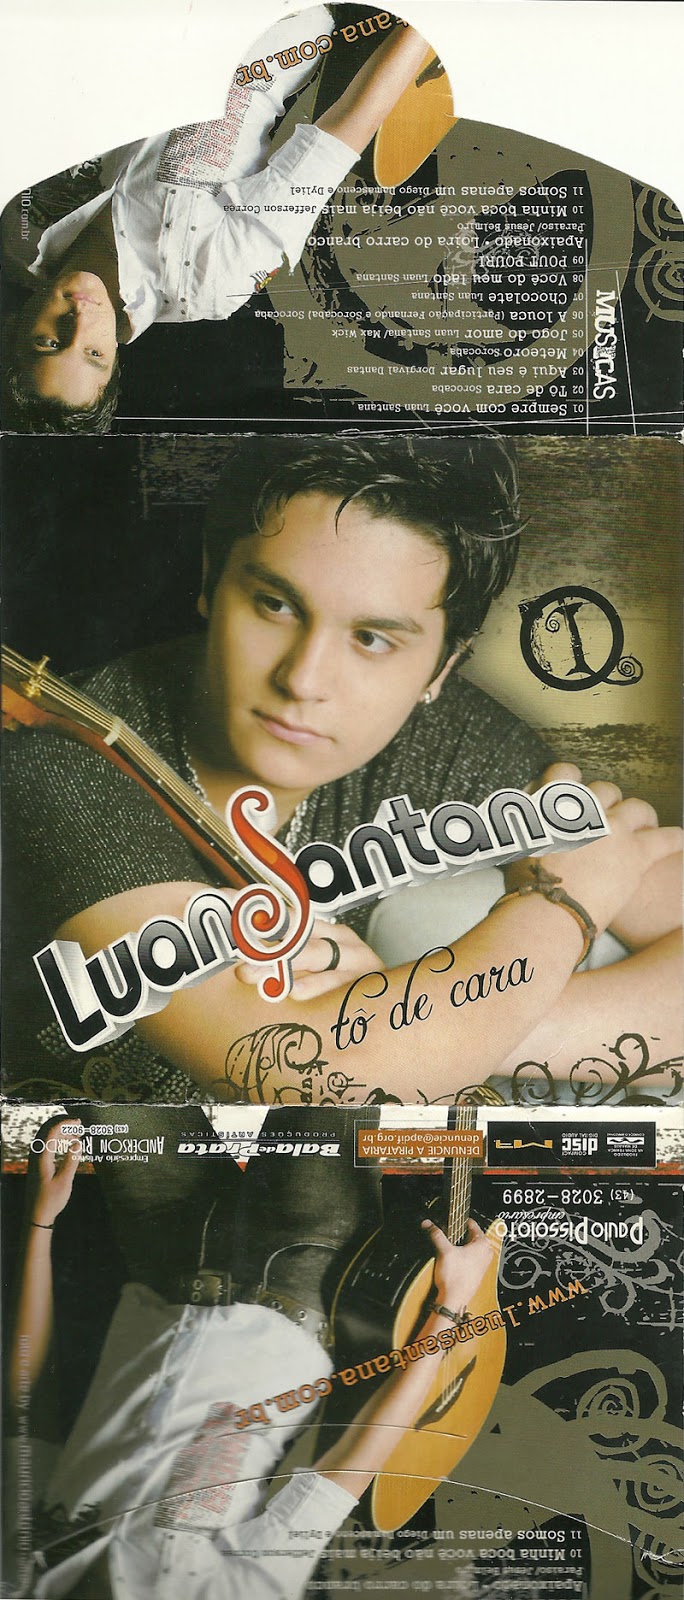 Jogo do Amor - Luan Santana 